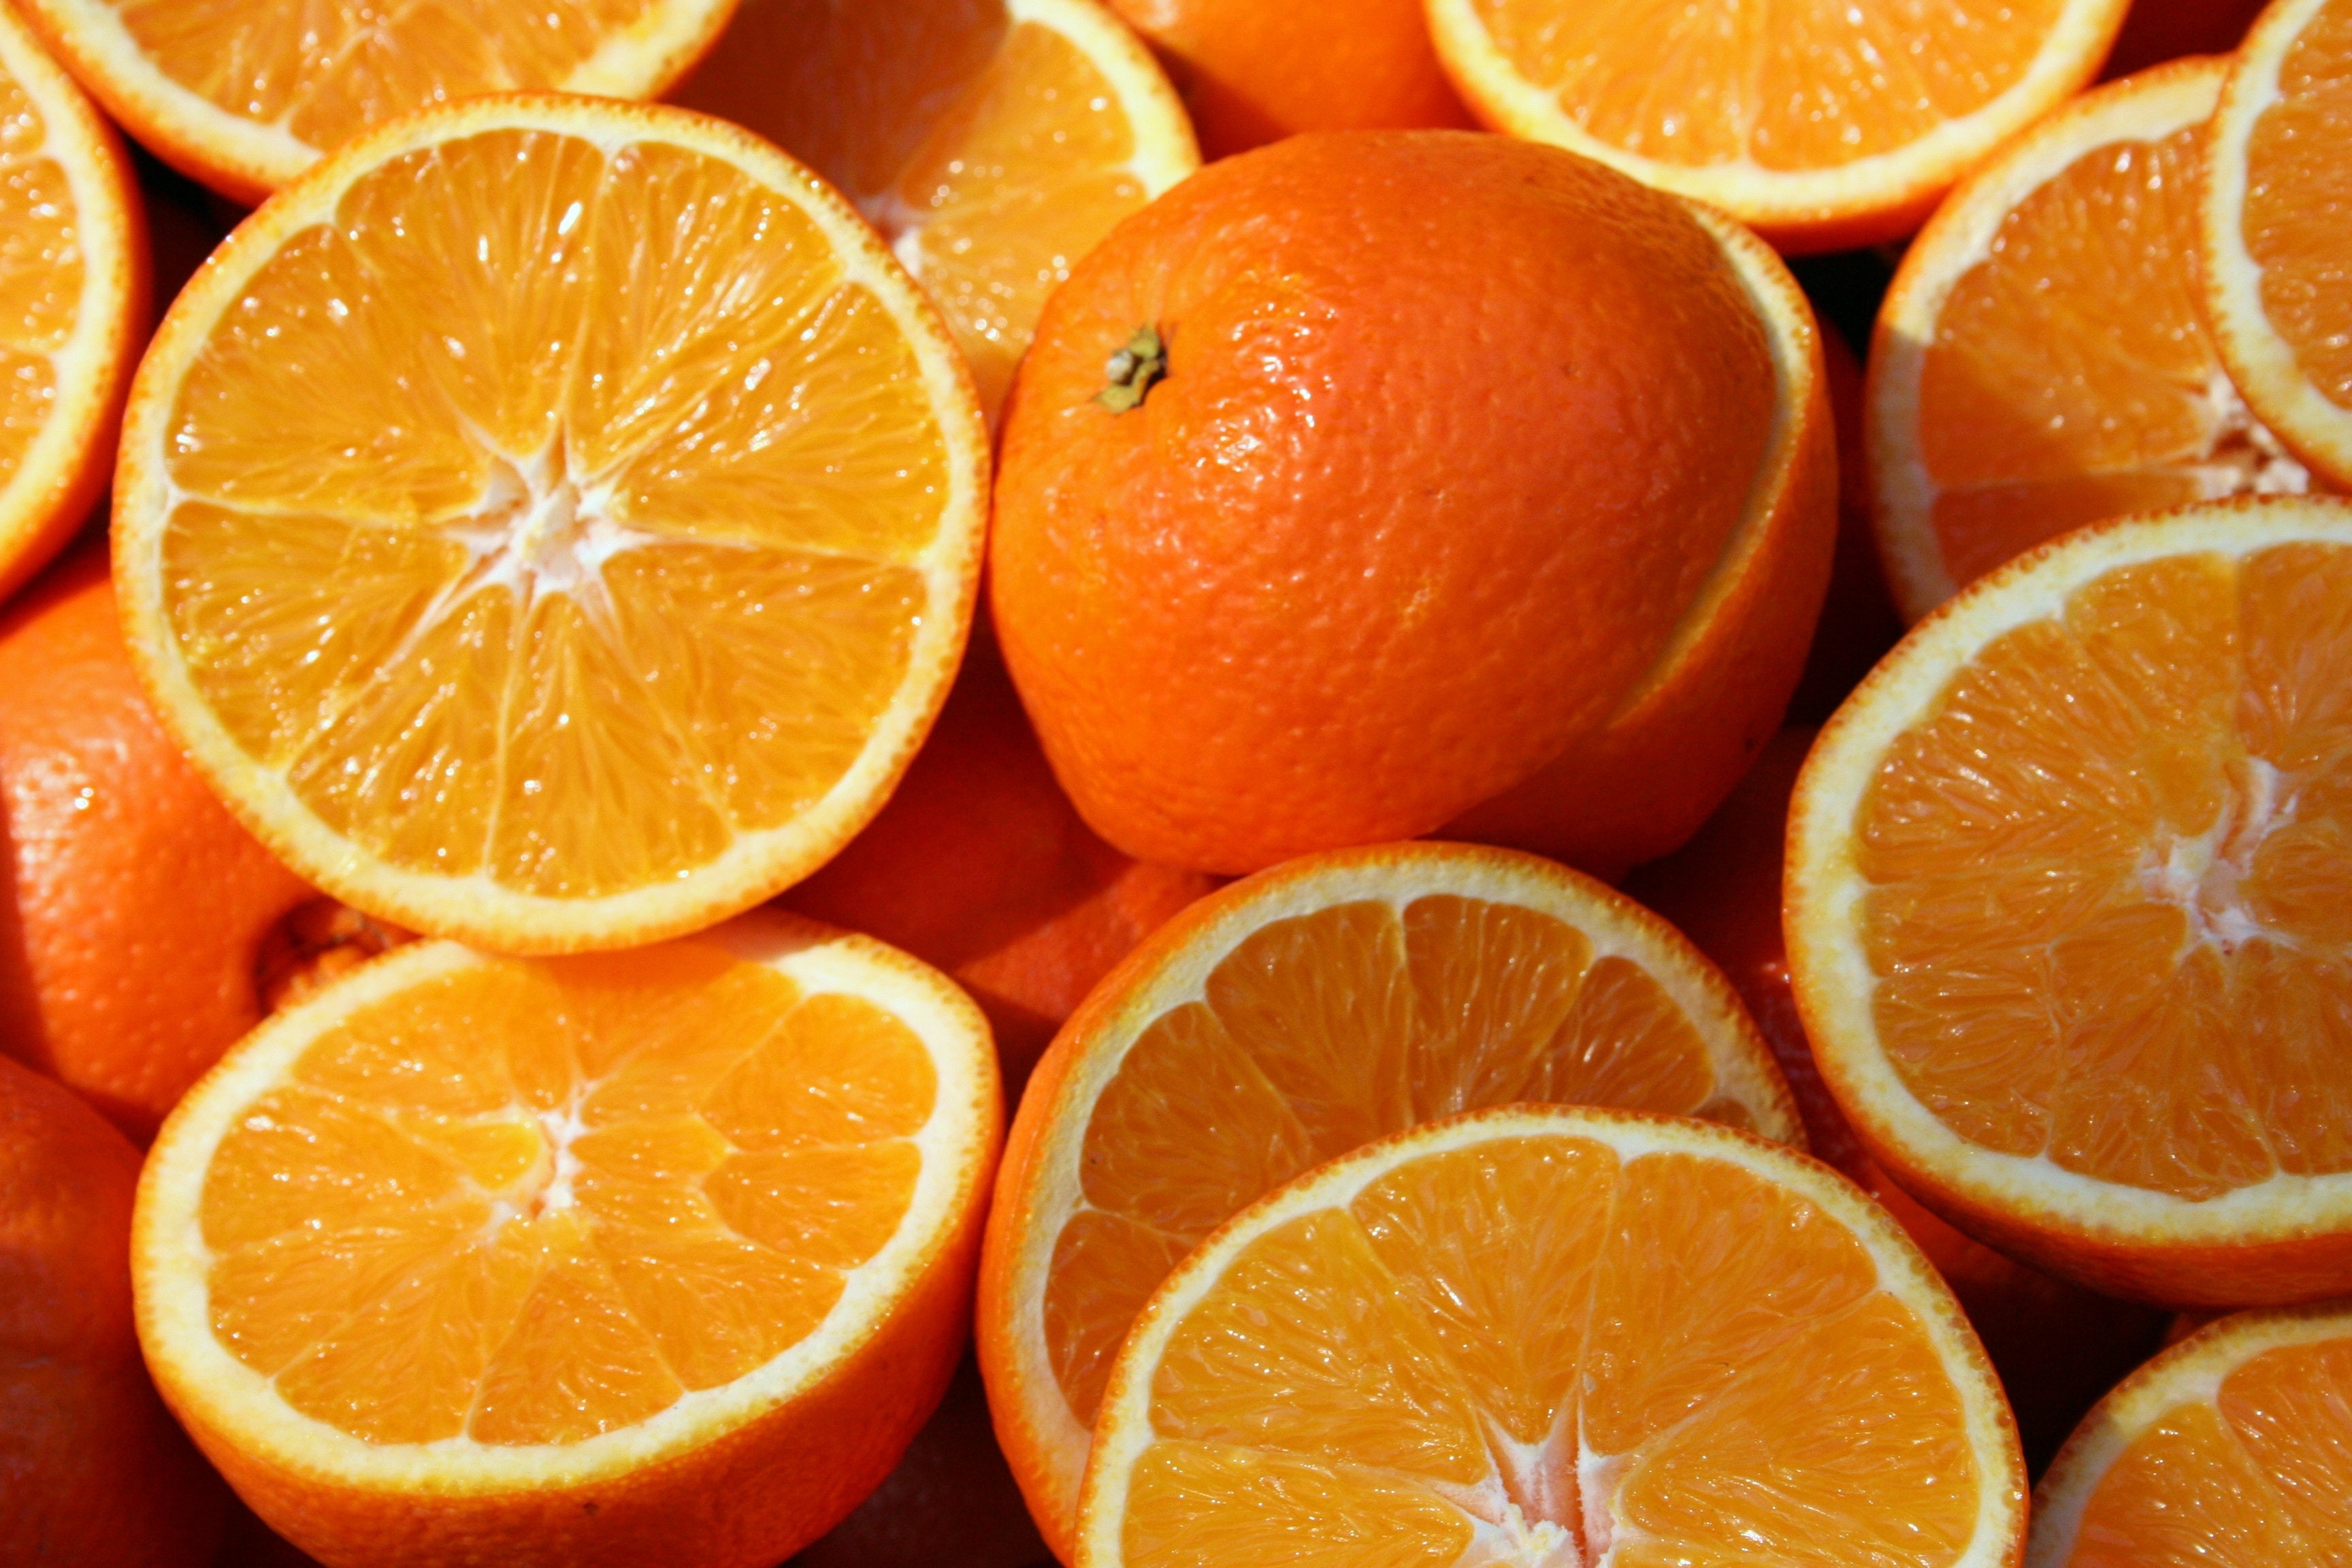 Compostos da laranja podem ajudar a controlar nível de açúcar no sangue (Foto: Sheraz Shaikh/Unsplash)